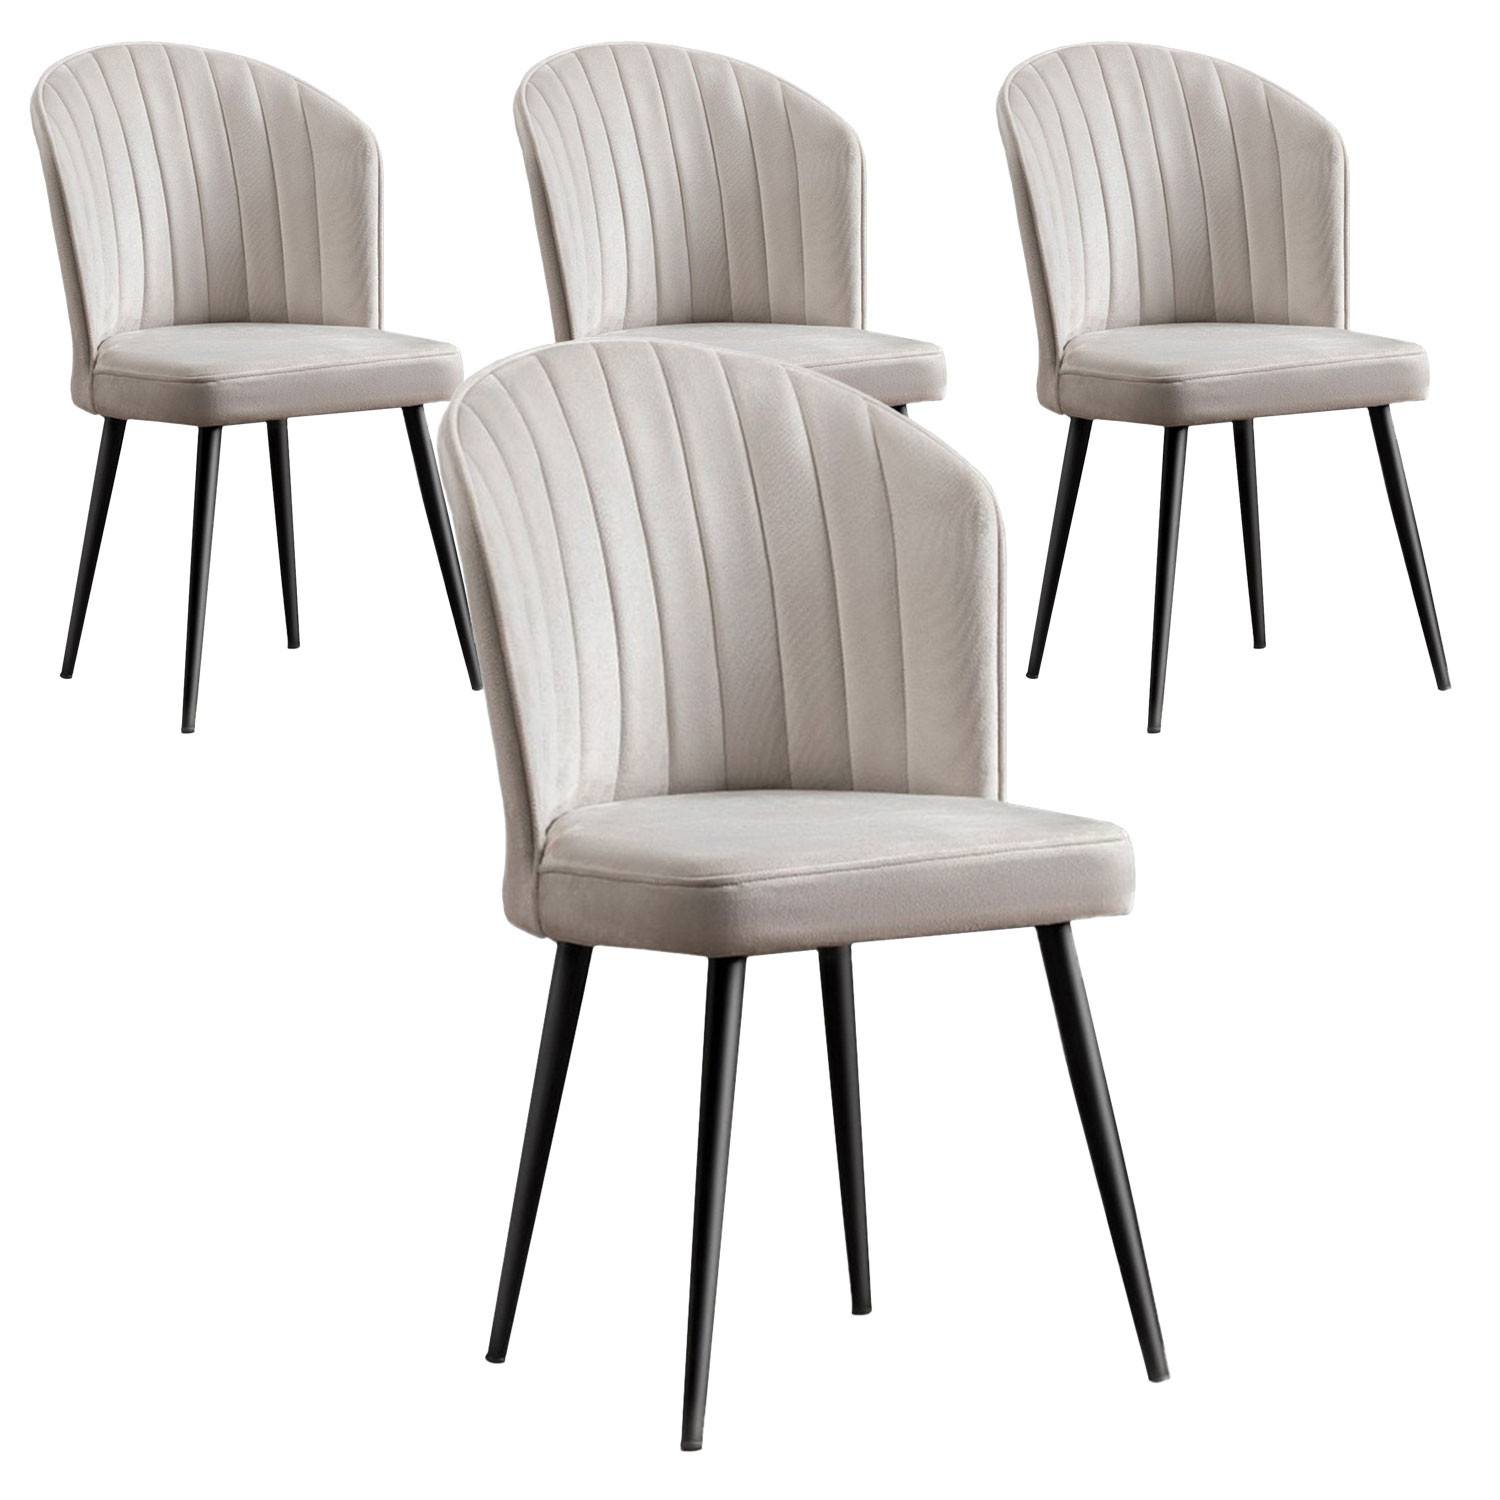 Lote de 4 sillas Iria de terciopelo blanco crema y metal negro